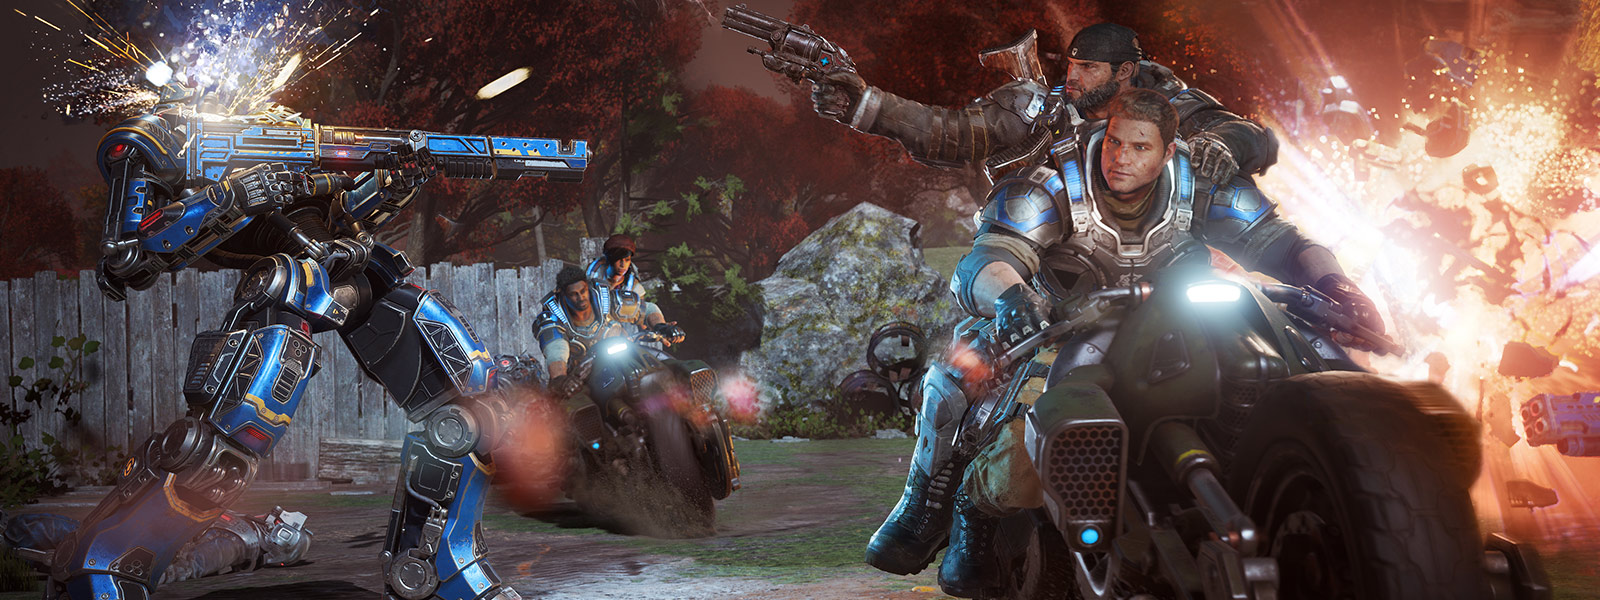 Джей Ди Феникс и его друзья стреляют из оружия и ездят на мотоциклах во время боя из игры Gears of War 4